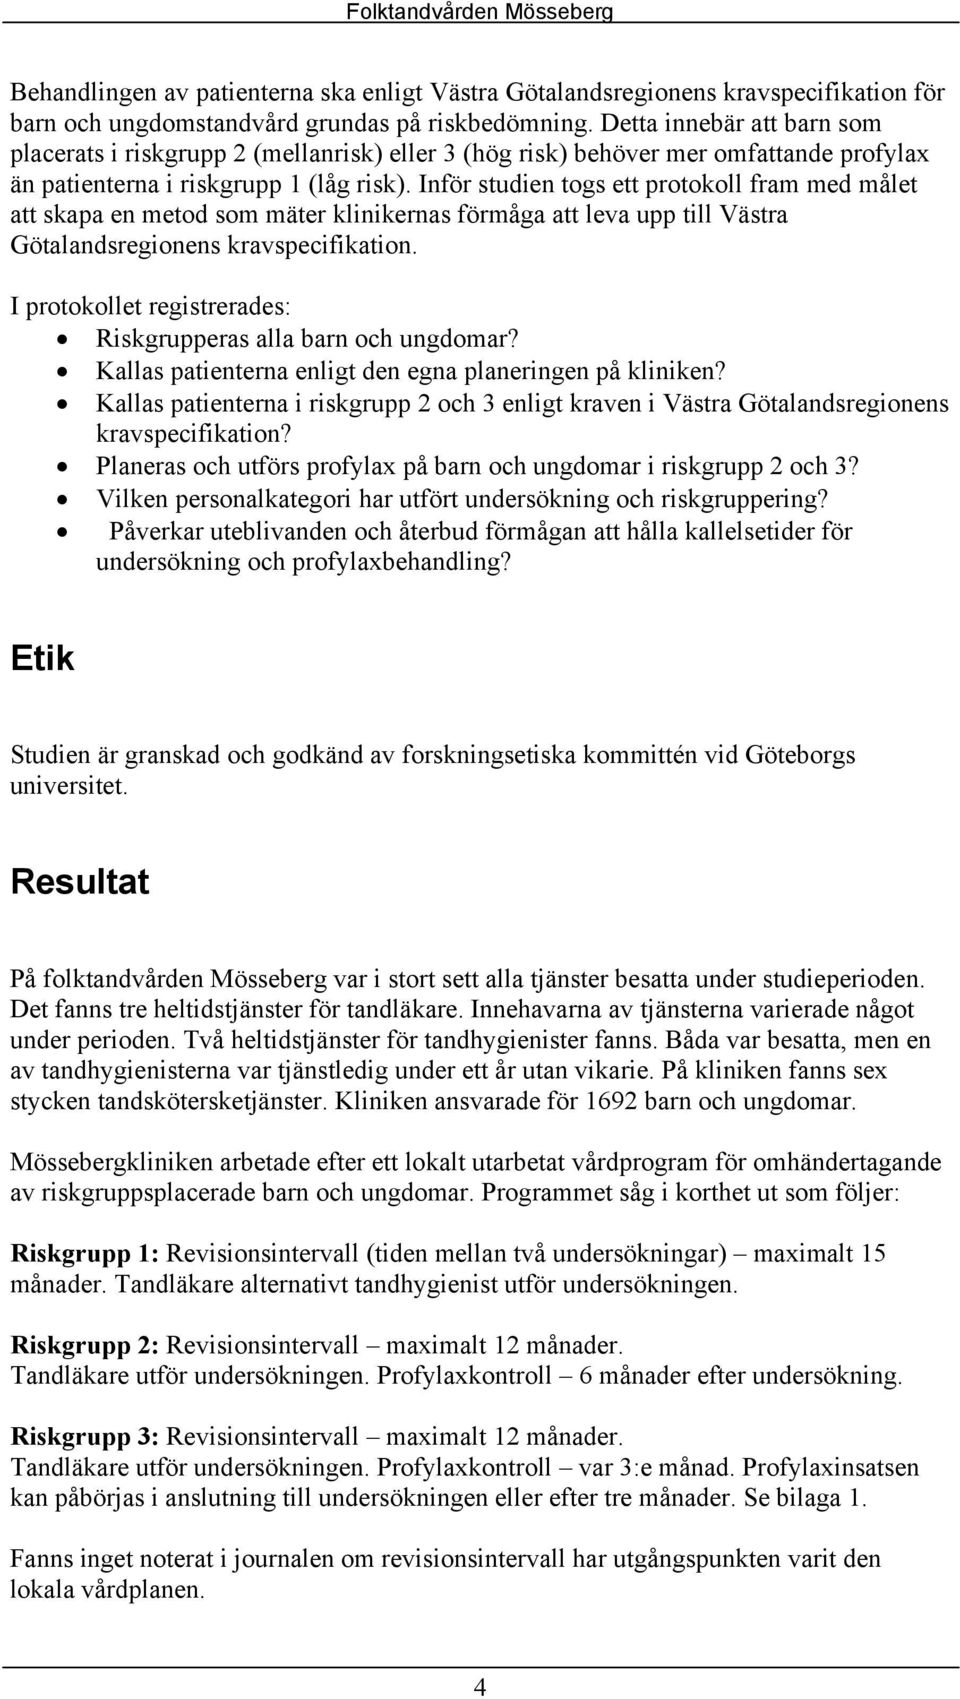 Inför studien togs ett protokoll fram med målet att skapa en metod som mäter klinikernas förmåga att leva upp till Västra Götalandsregionens kravspecifikation.